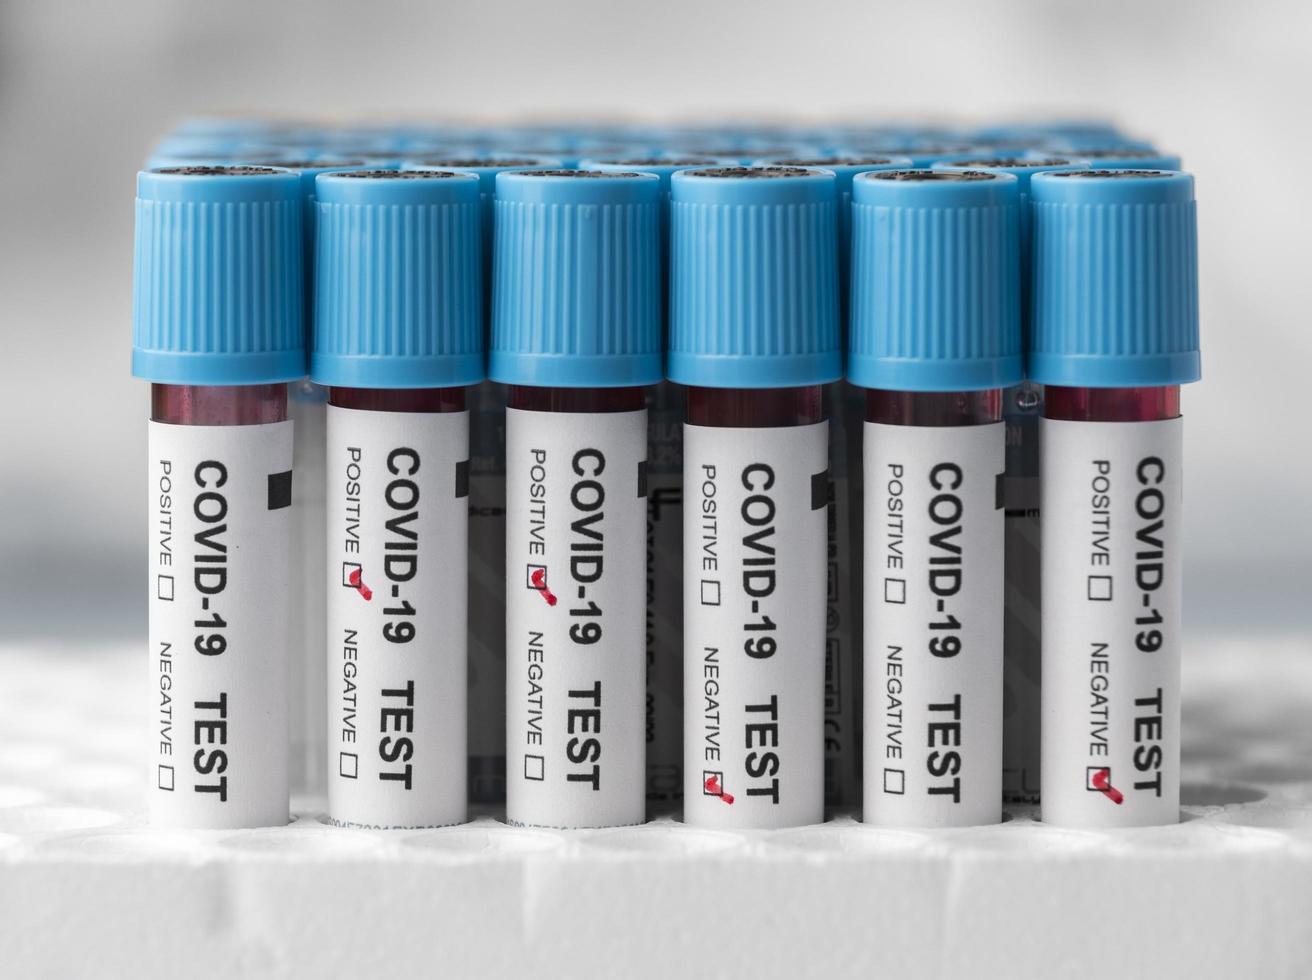 des échantillons de sang pour le test de covid en laboratoire photo